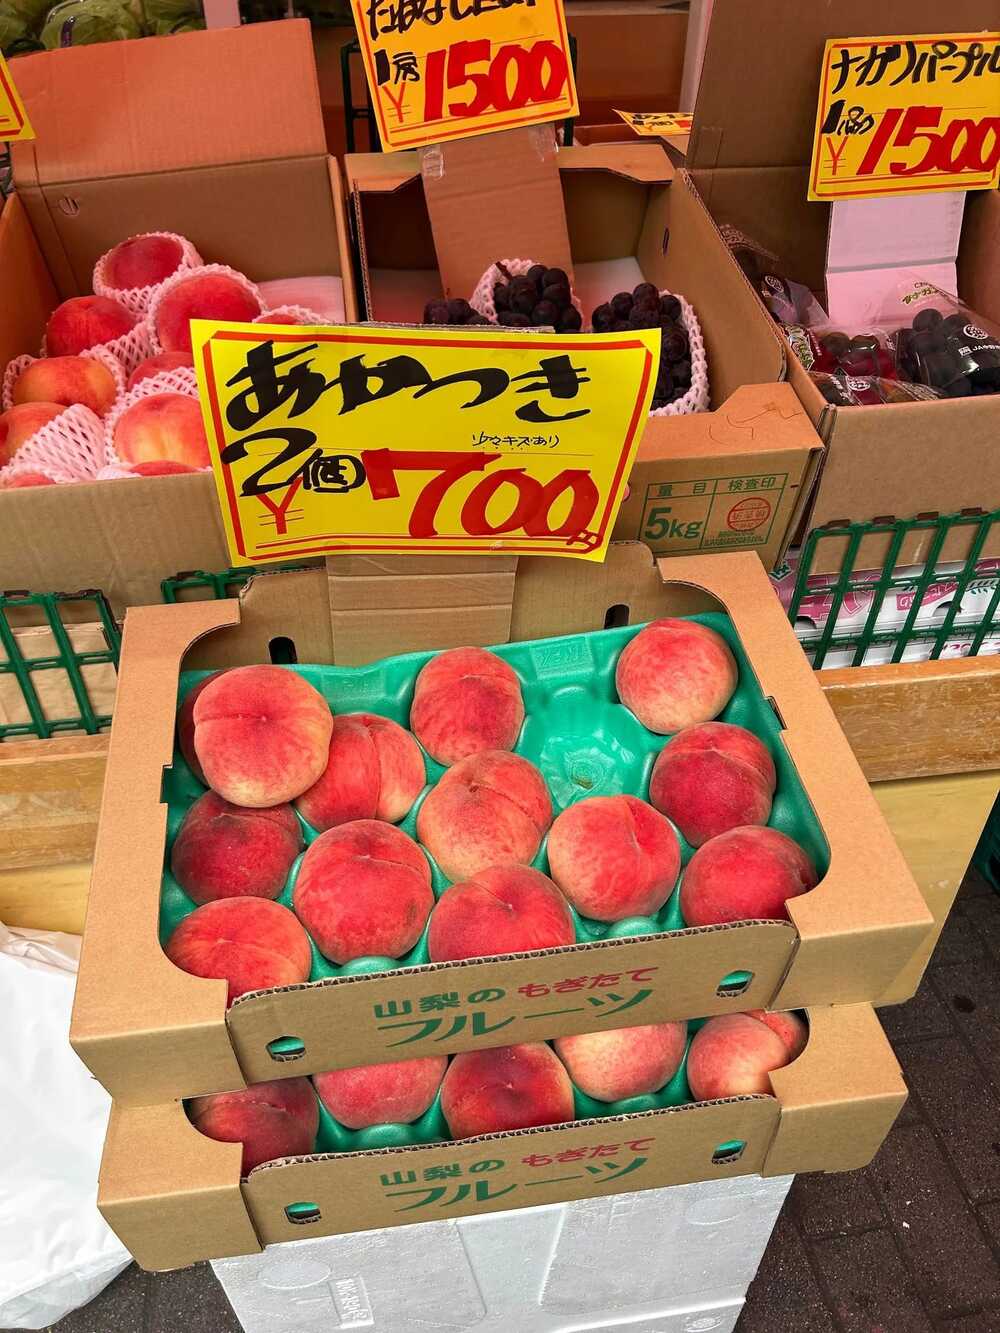 原PO在日本一次買了10顆水蜜桃加2串葡萄，想帶回台灣分享。(圖/翻攝自日本旅遊公社臉書)